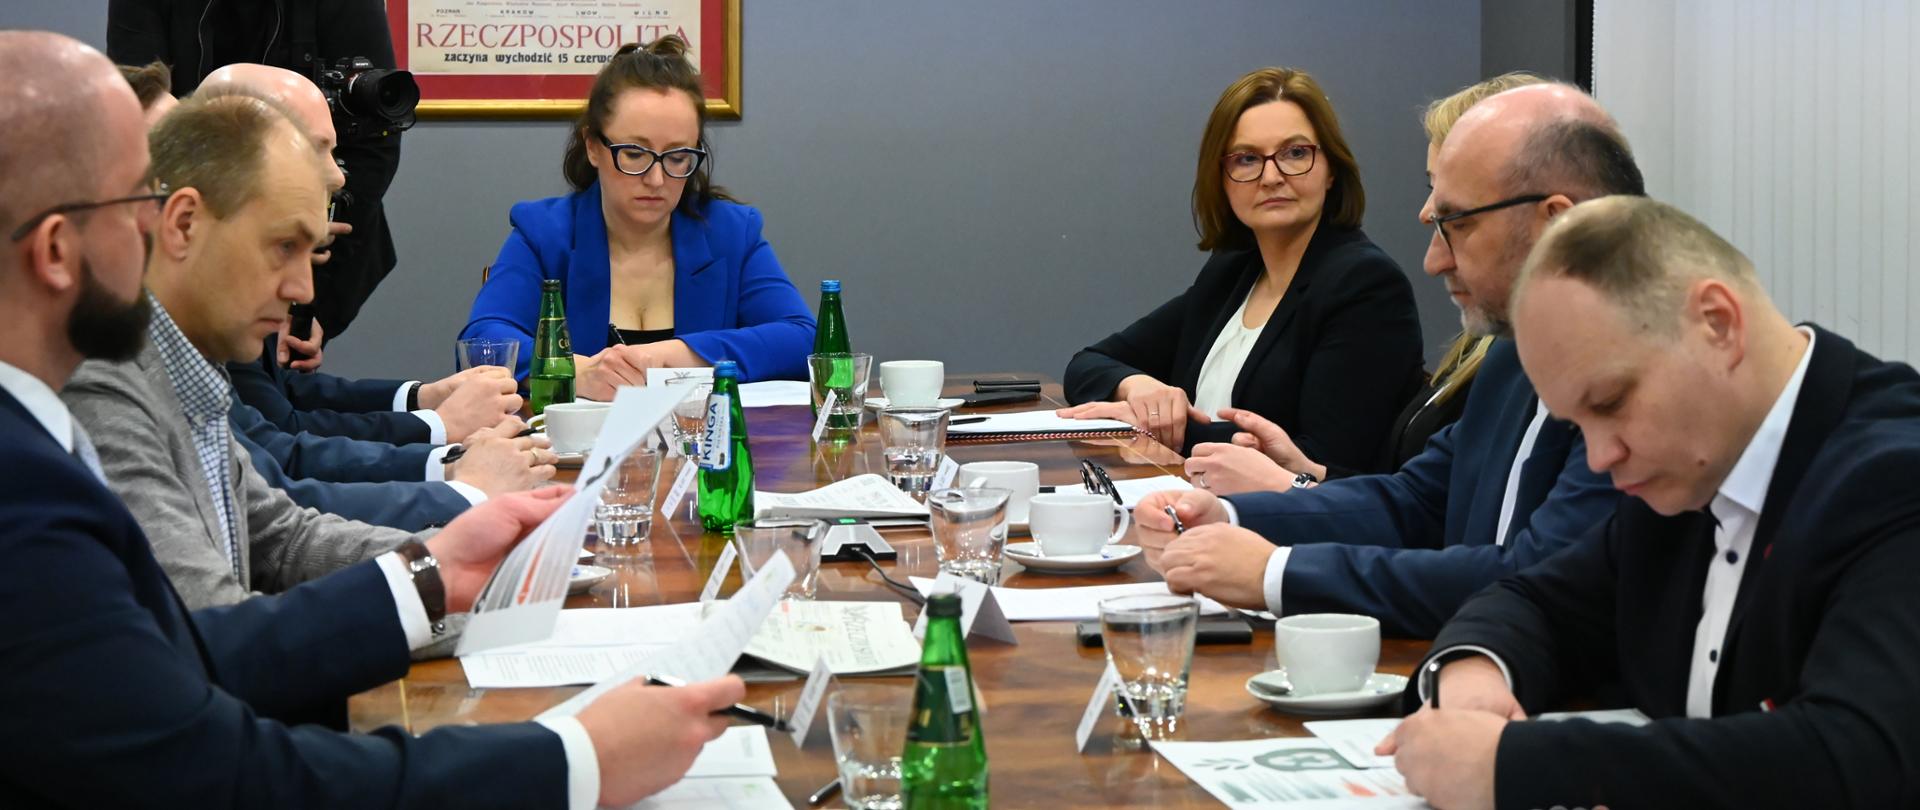 wiceminister Anita Sowińska wzięła udział w debacie Rzeczpospolitej